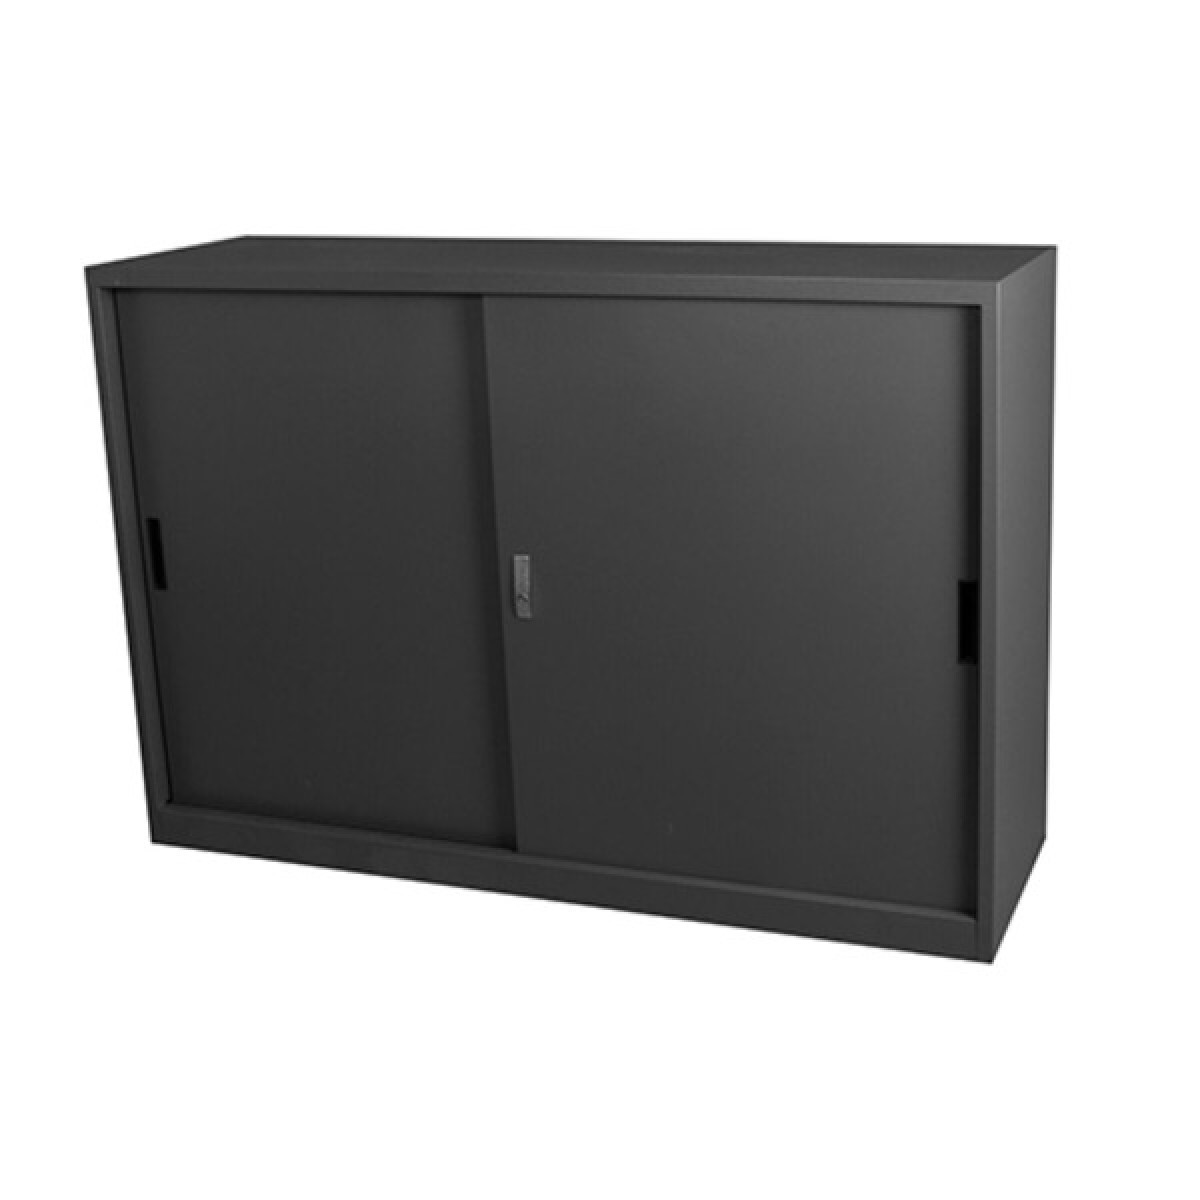 Steelco Metal Sliding Door Storage Cabinet